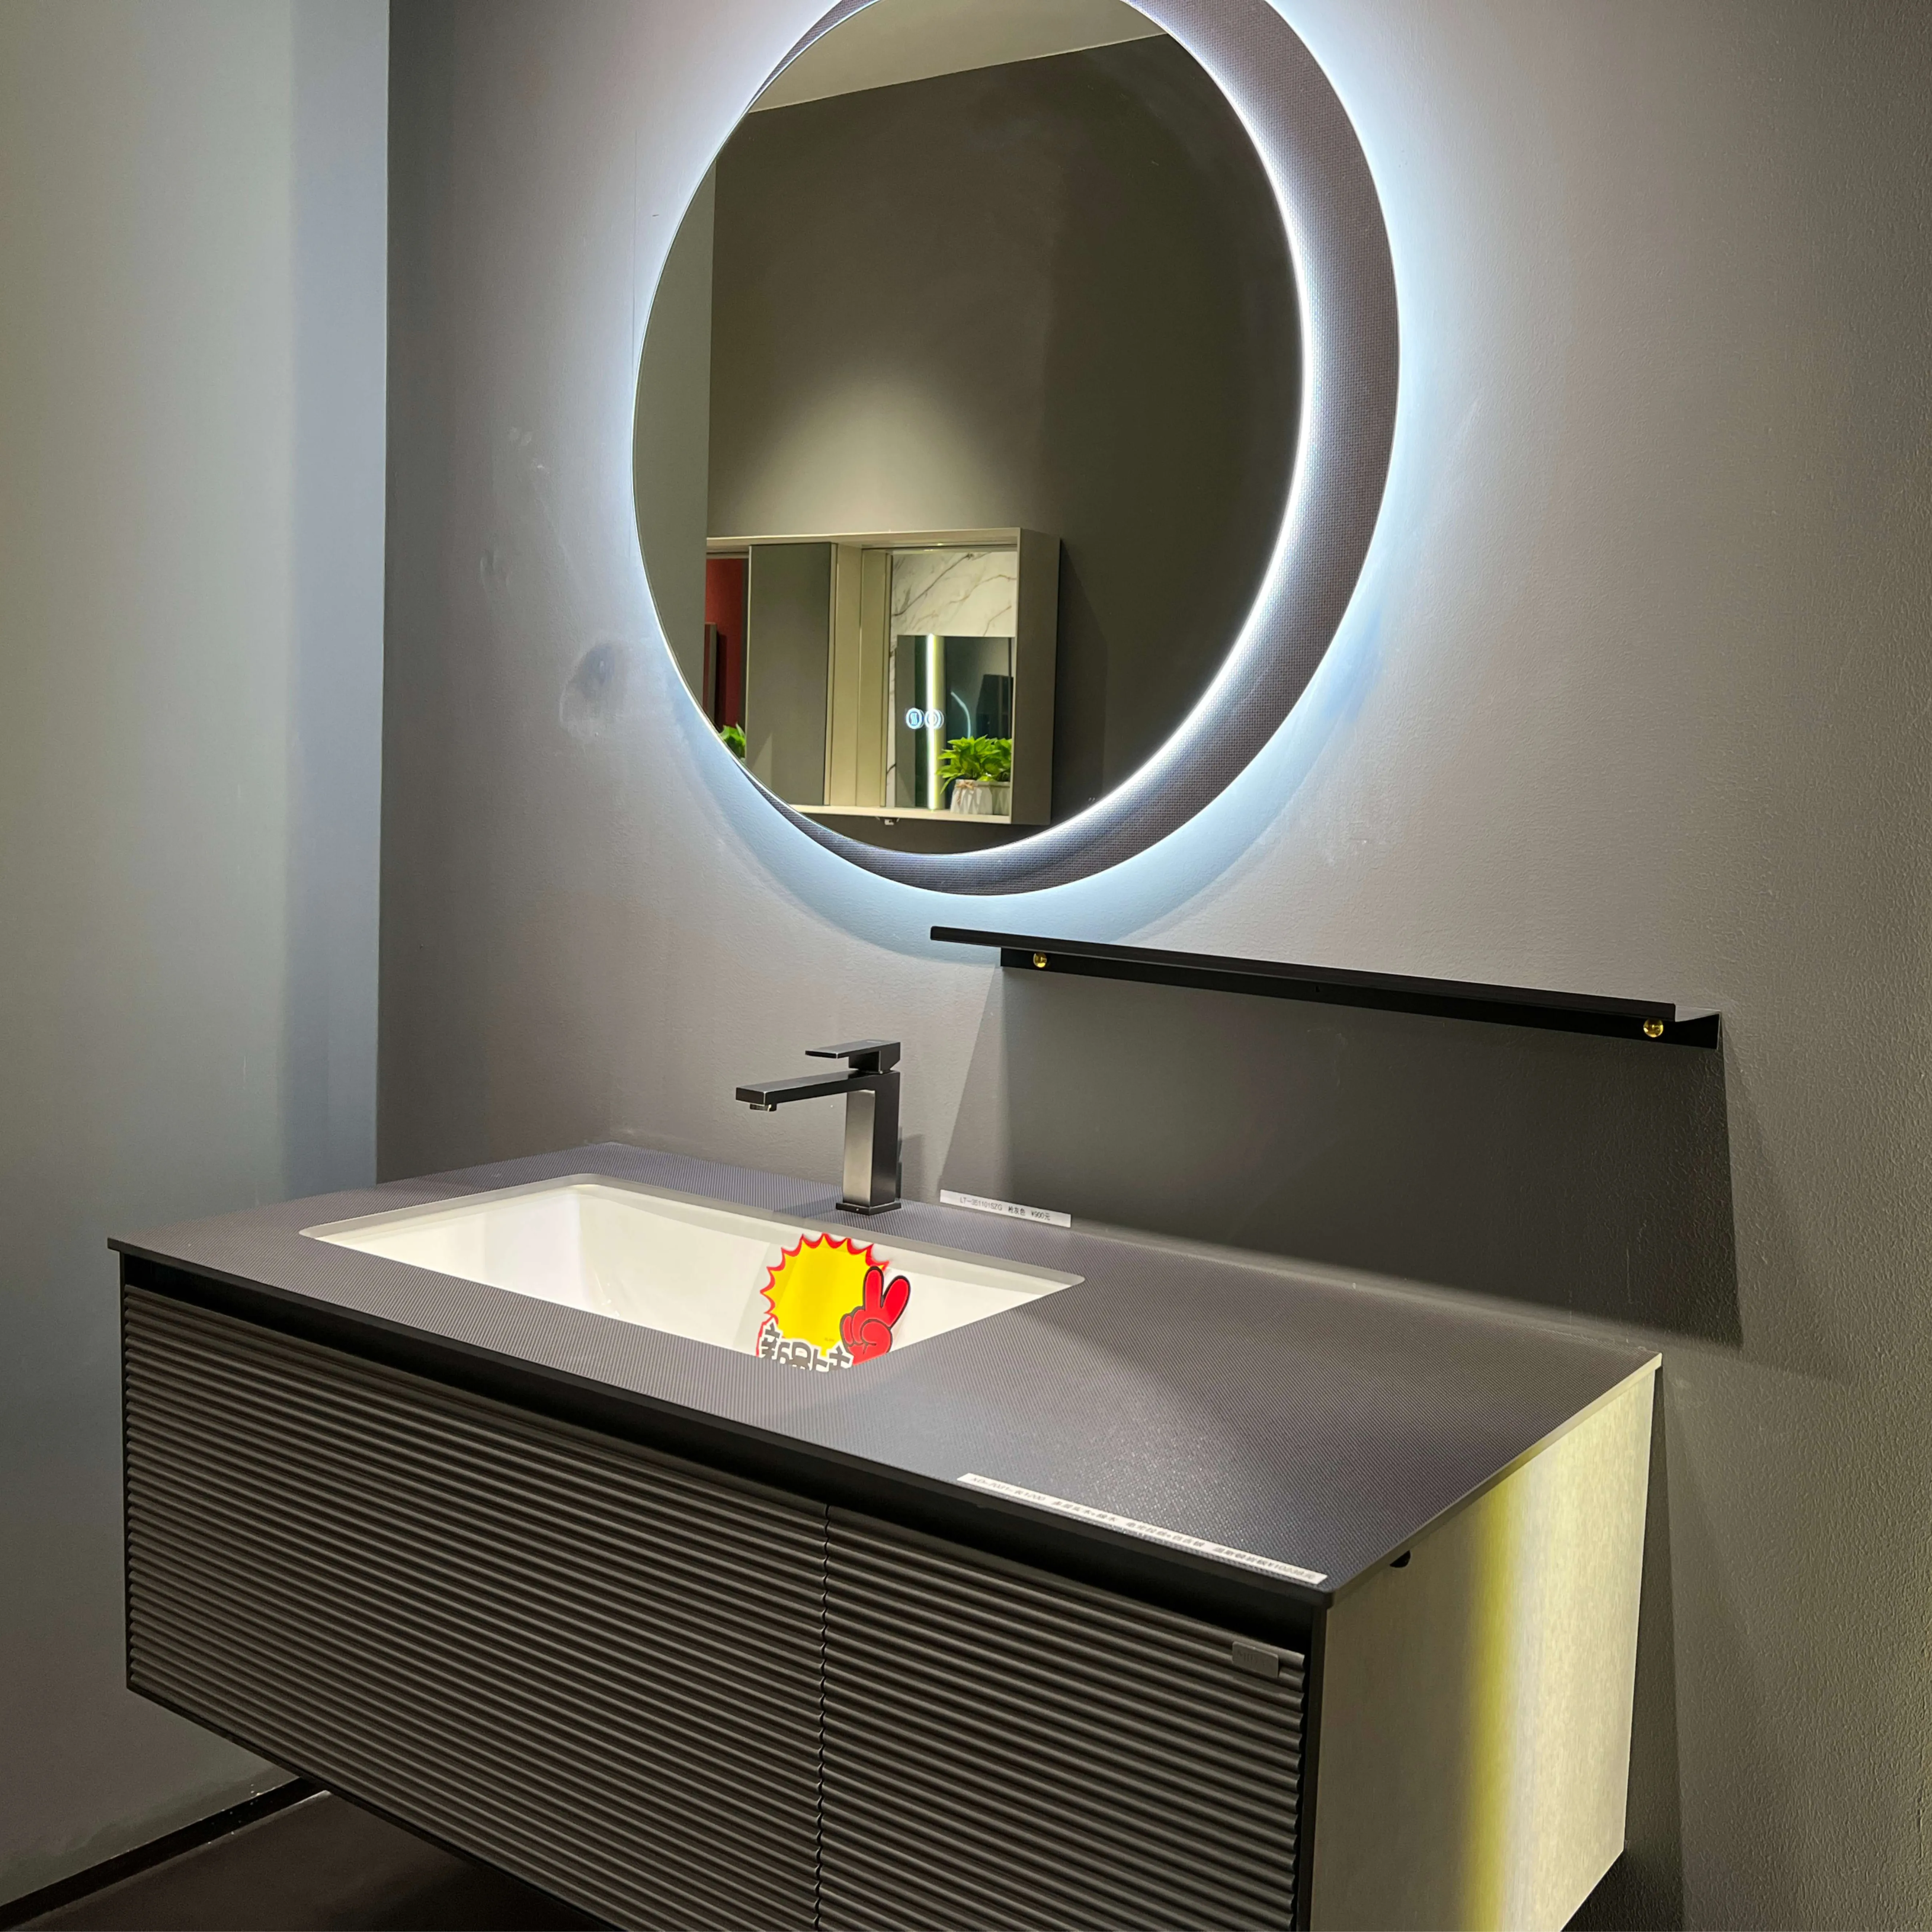 Armario de madera contrachapada y roble para cuarto de baño, mueble con diseño de piedra interior, color gris oscuro